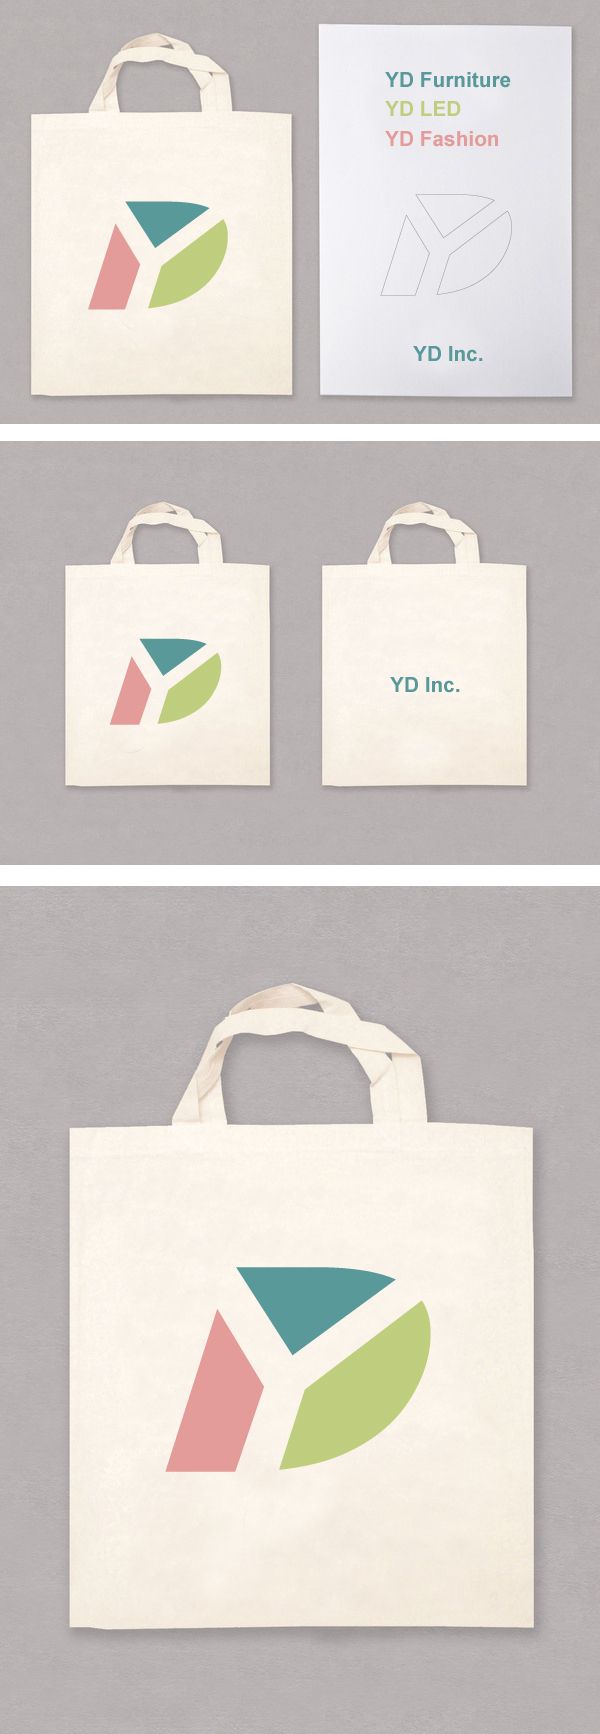 Vayu Inc Logos